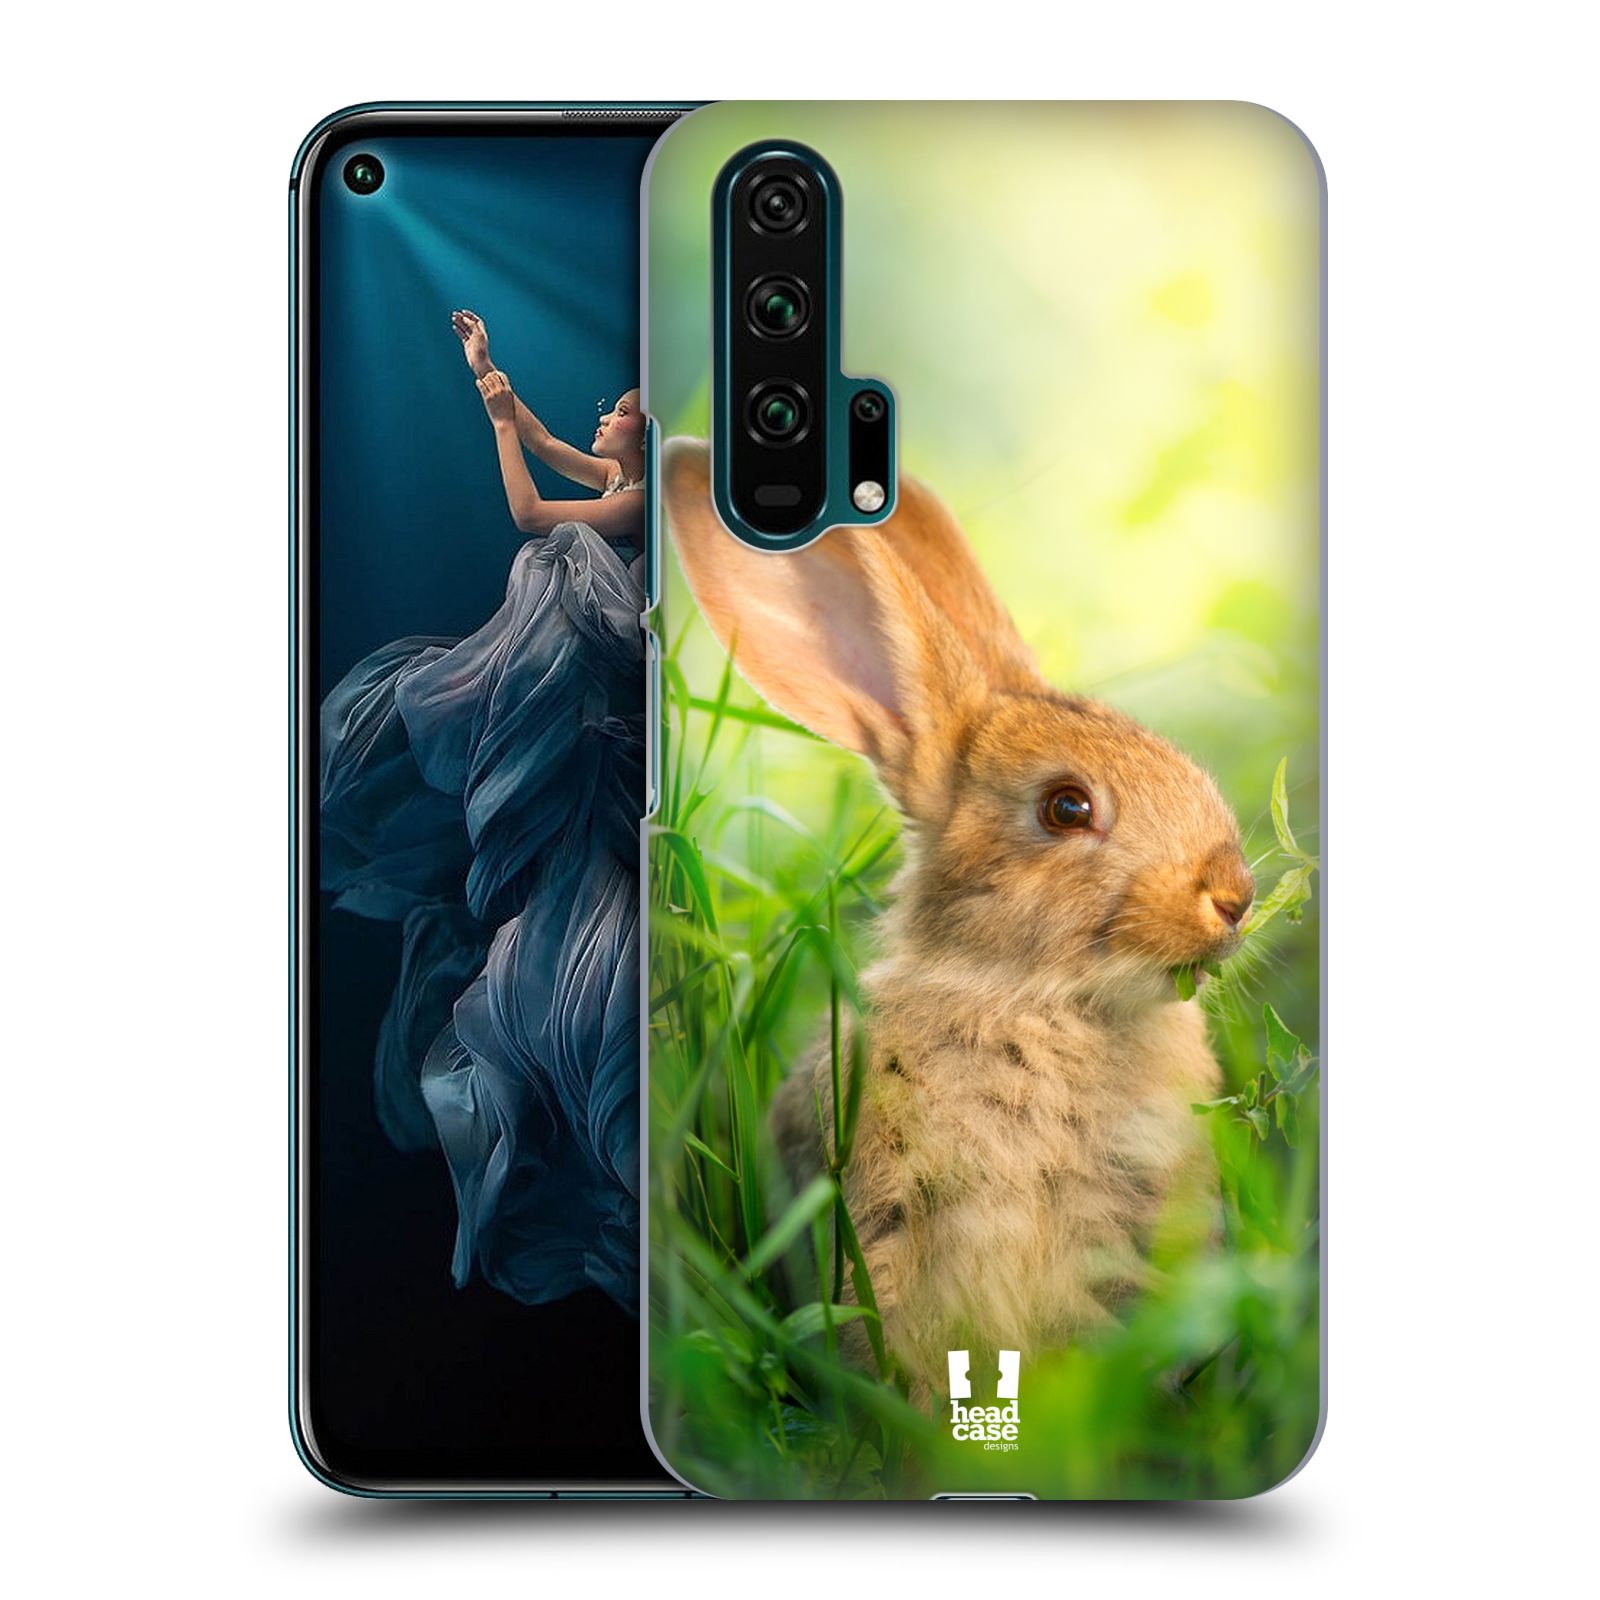 Pouzdro na mobil Honor 20 PRO - HEAD CASE - vzor Divočina, Divoký život a zvířata foto ZAJÍČEK V TRÁVĚ ZELENÁ